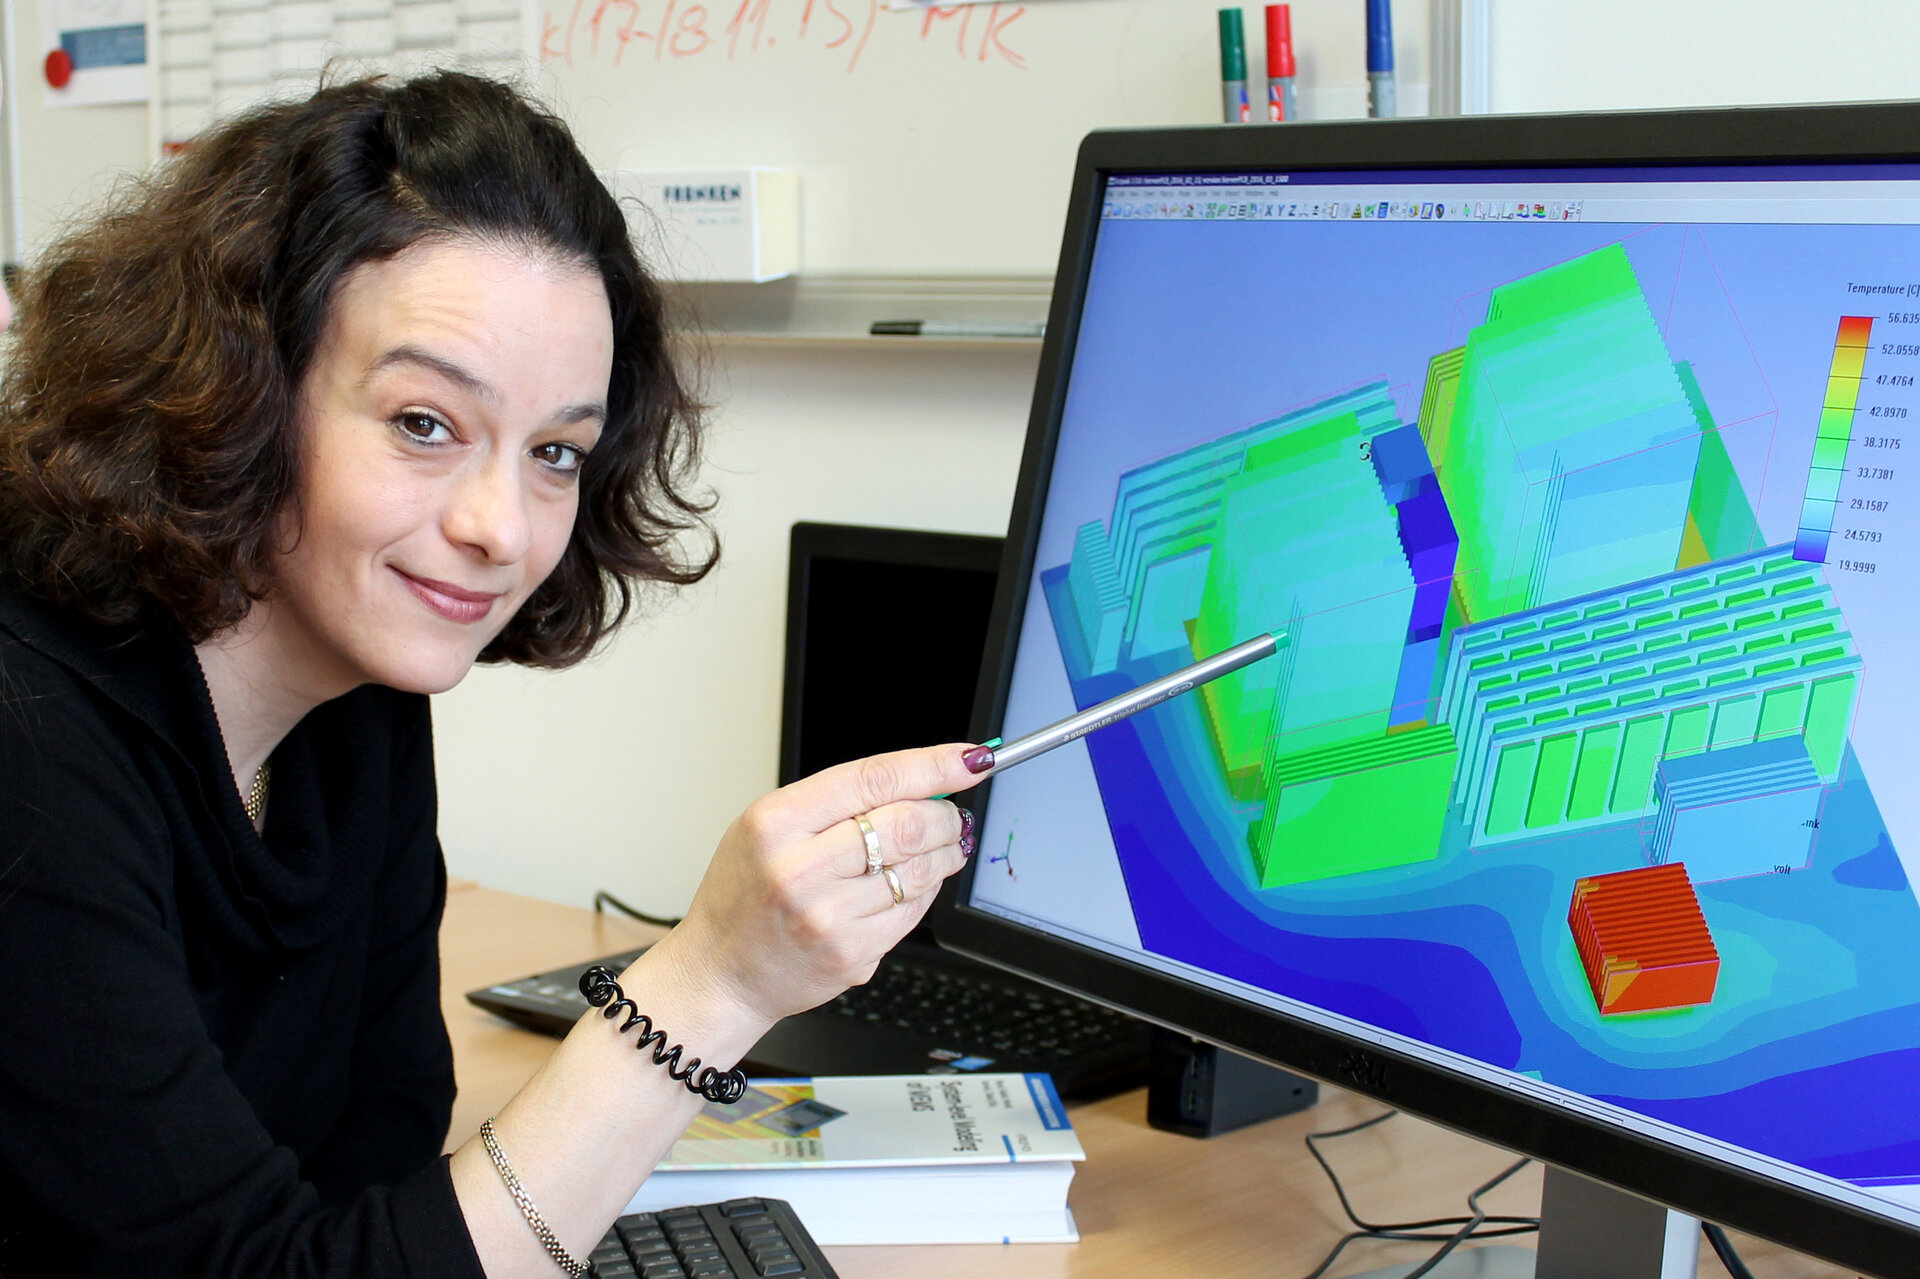 Prof. Dr. Tamara Bechtolds Forschungsschwerpunkt liegt in der Modellierung und Simulation von Mikrosystemen. Foto: Jade HS